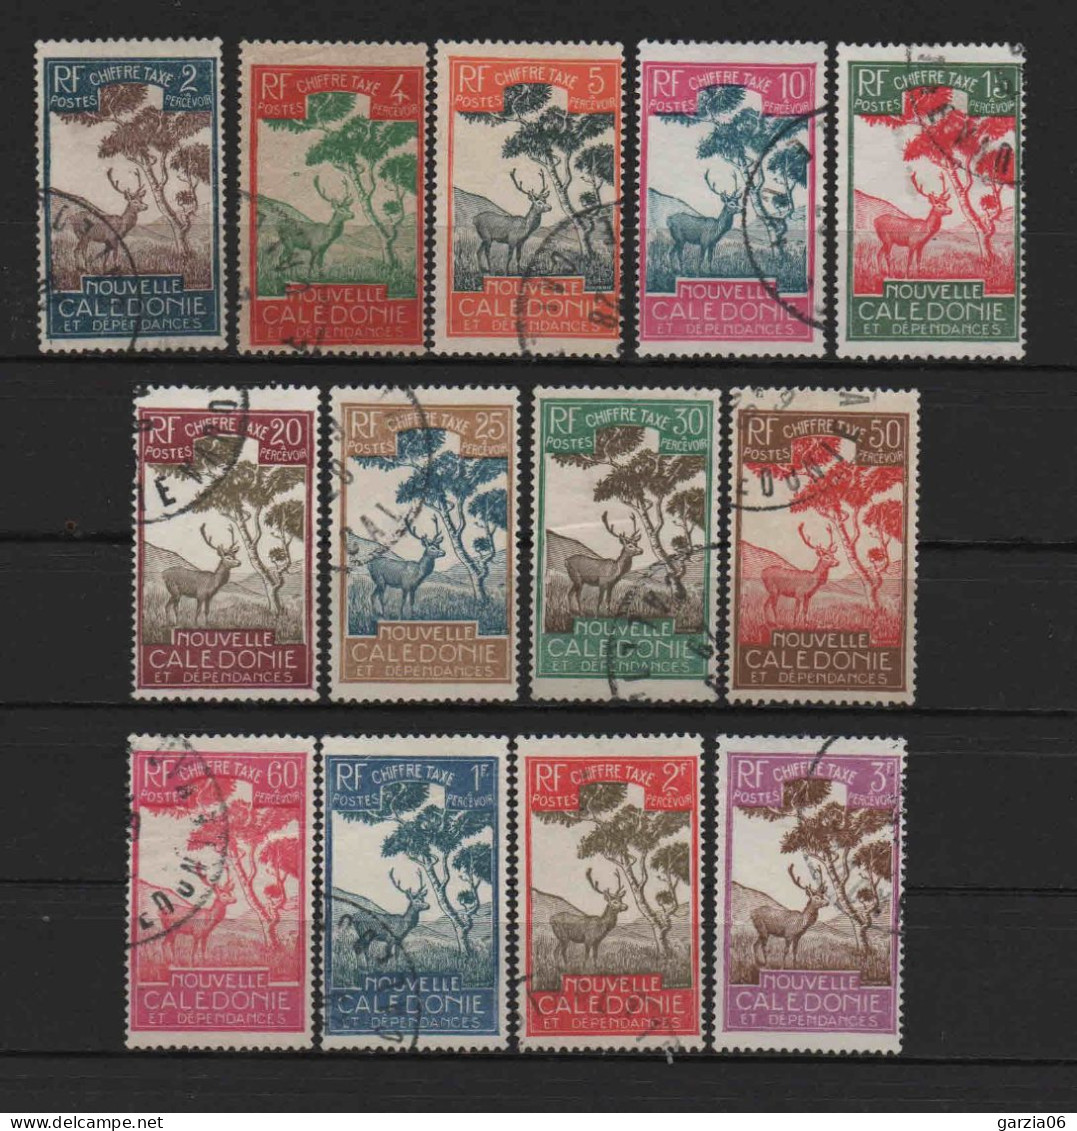 Nouvelle Calédonie - 1928 - Tb Taxe - N° 26 à 38  - Oblit- Used - Postage Due